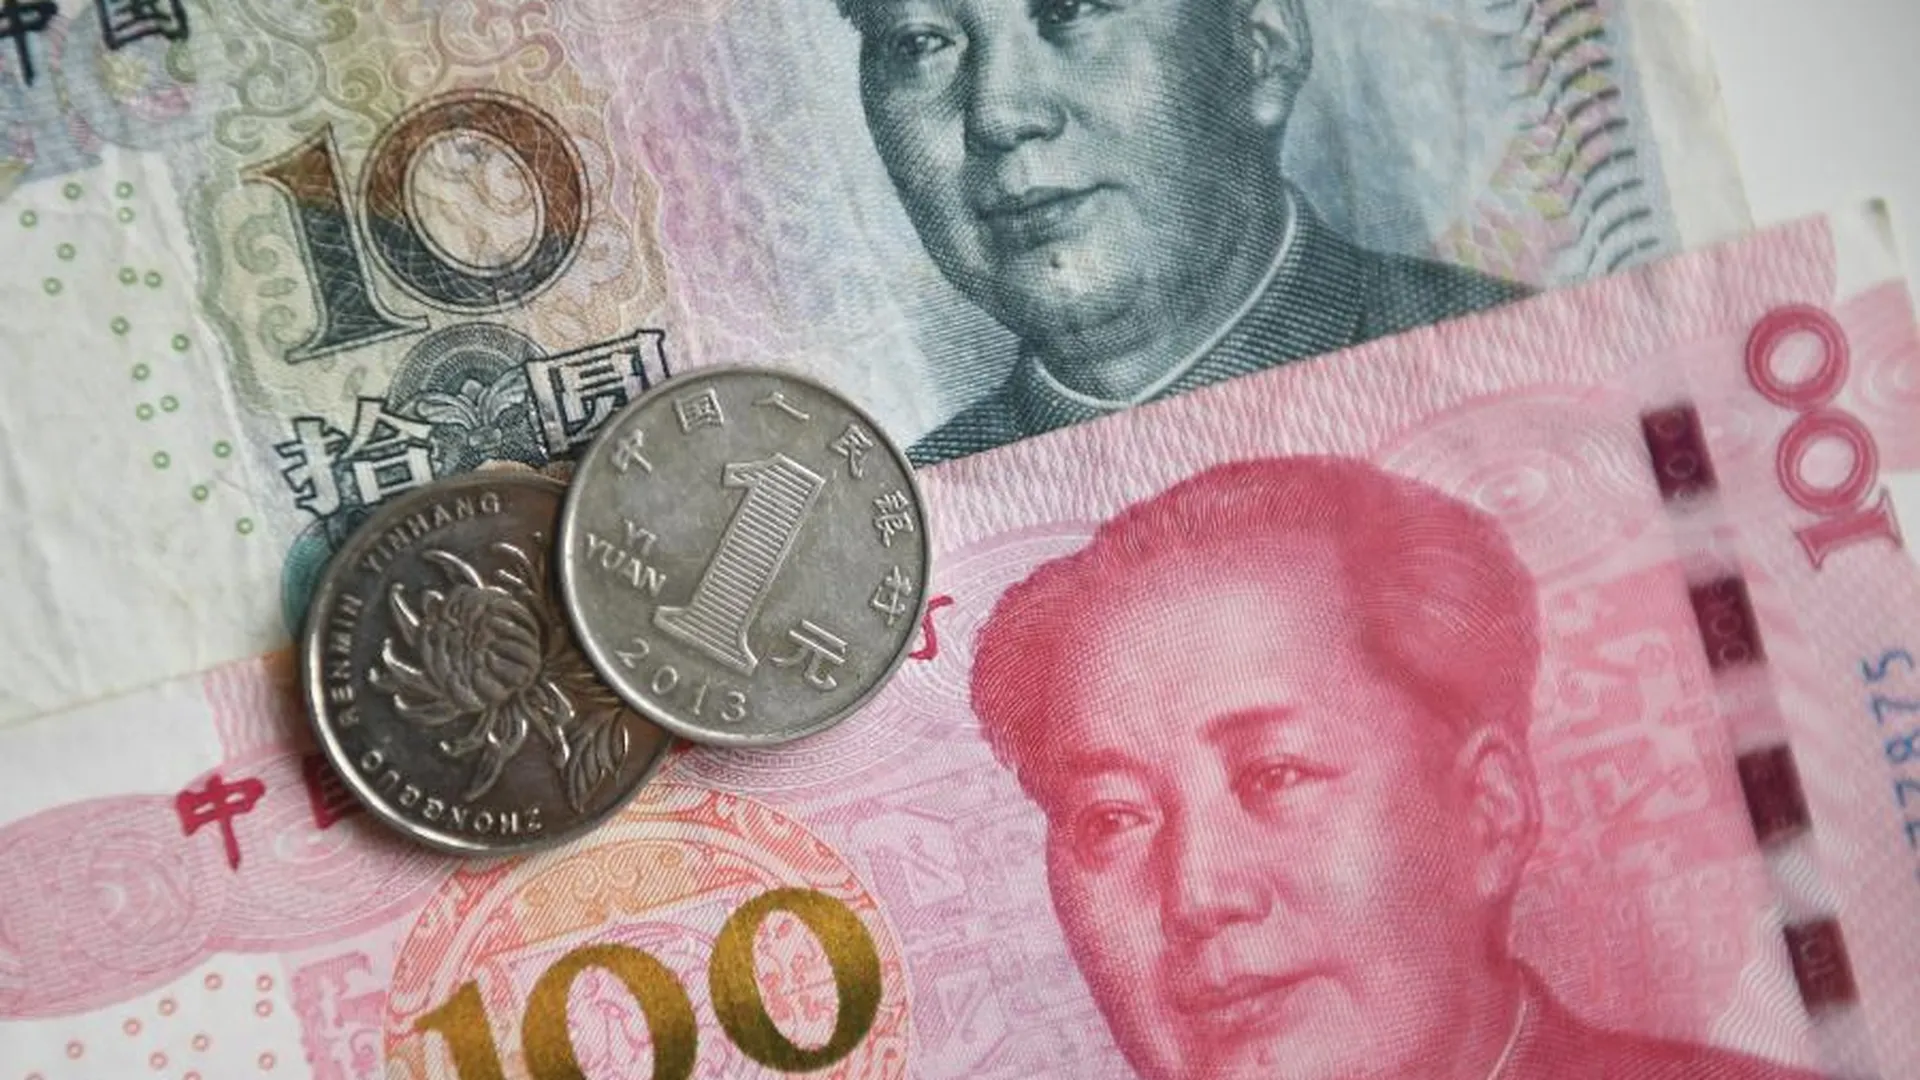 Тинькофф Банк в 5 тыс раз увеличил валютный риск в юанях перед санкциями